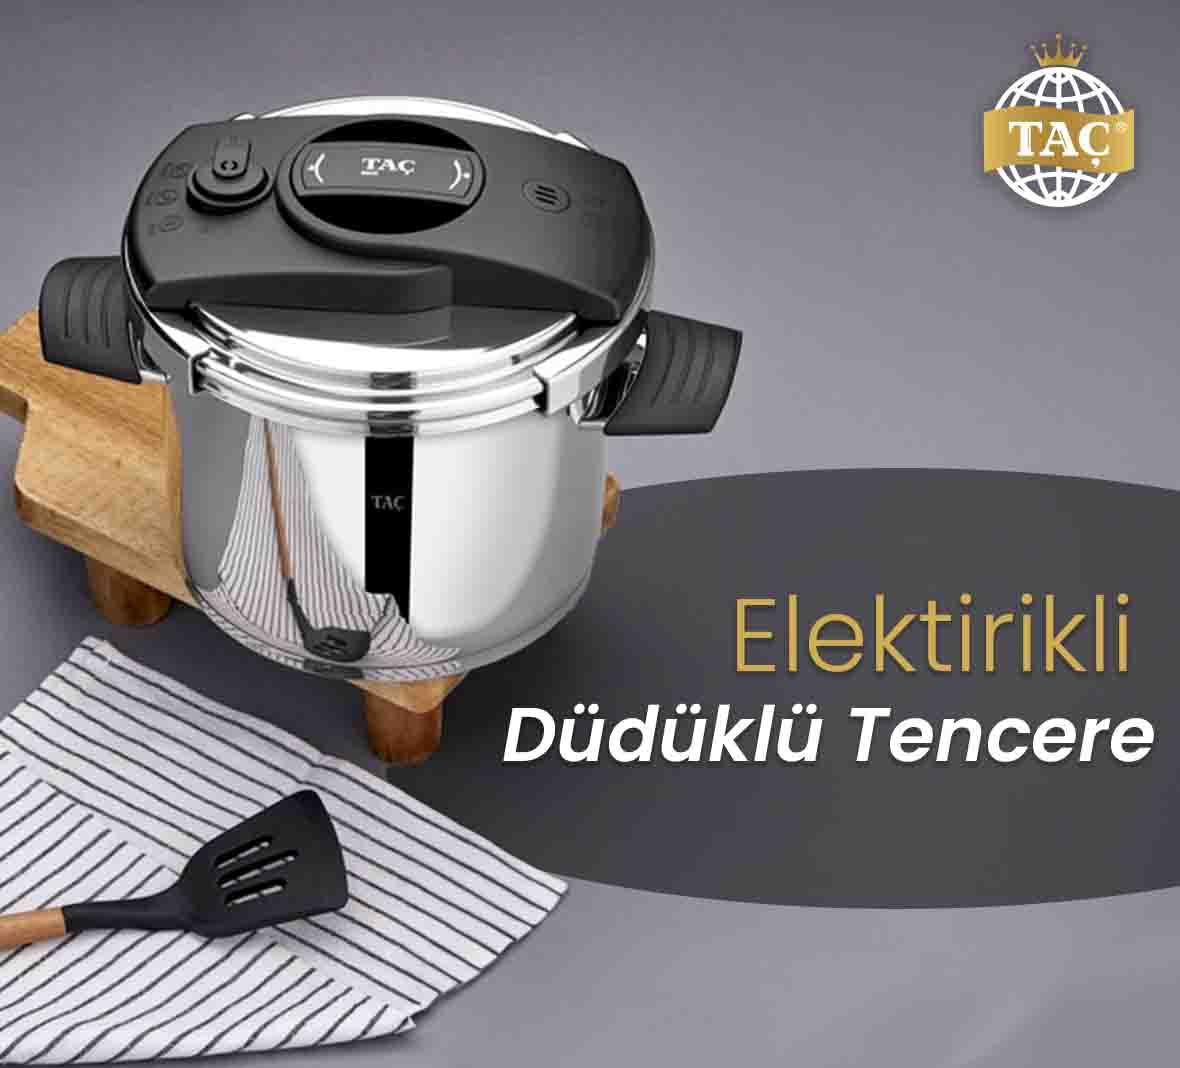 Elektrikli Düdüklü Tencere - Taç Mutfak Pişirme Ürünleri - Tacev.com